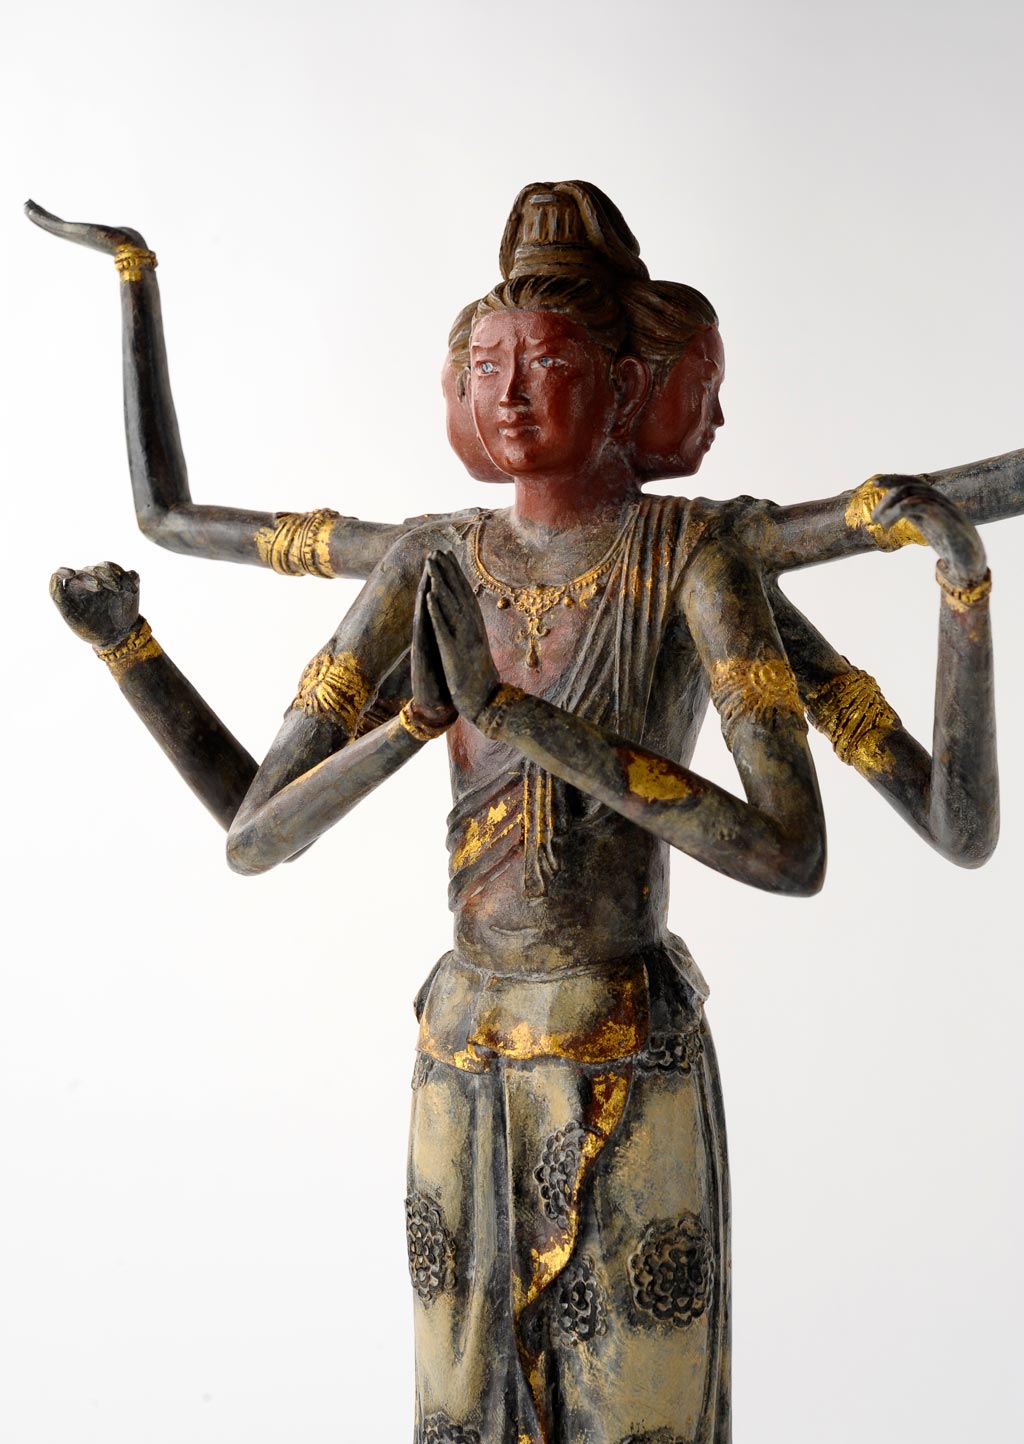 喜多敏勝 原型 仏像 保証書付 ブロンズ像 彫刻 阿修羅像 仏教美術 蝋型鋳銅製